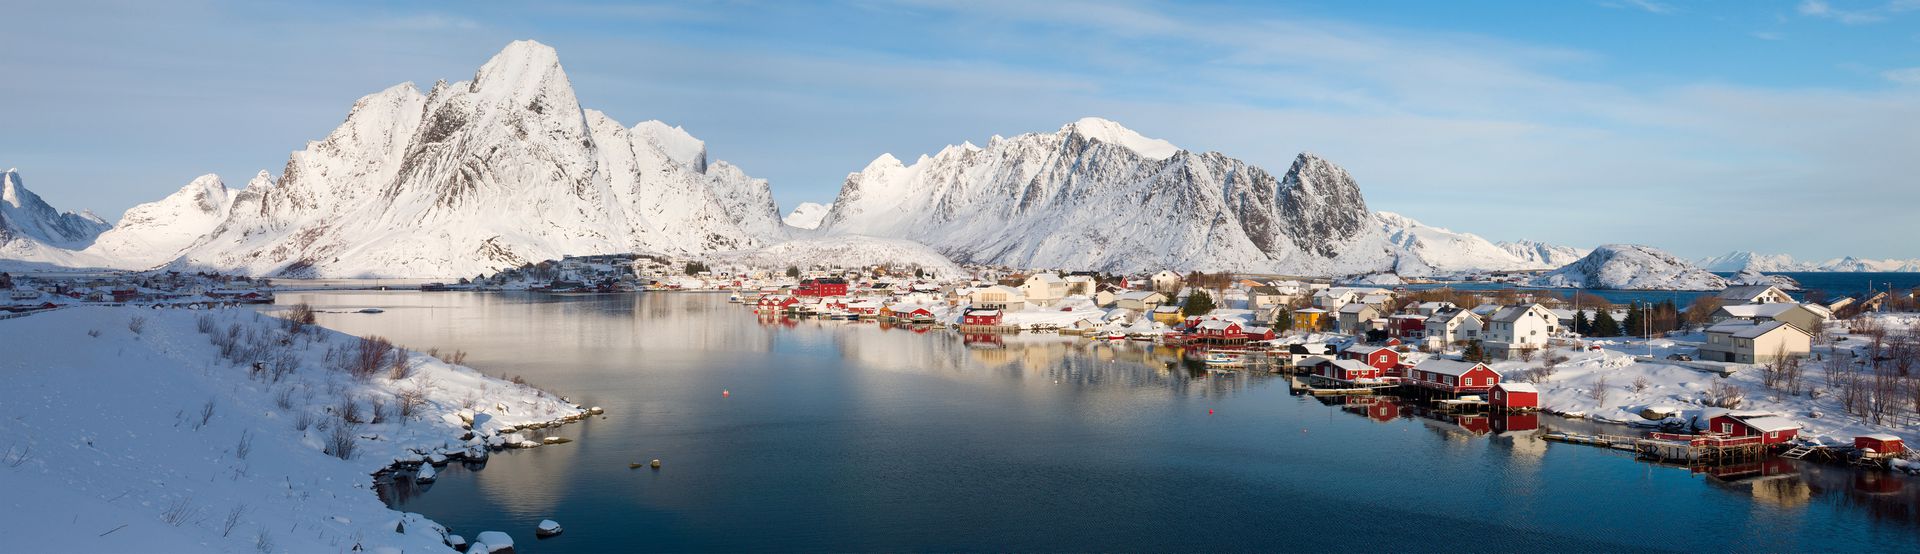 挪威北部海岸附近的绝美渔村Hamnoy。震慑人心的山峦，幽兰宁静的湖水，一切存在于童话中的建筑物、小渔船，就在这个神奇的挪威小镇。（视觉中国）